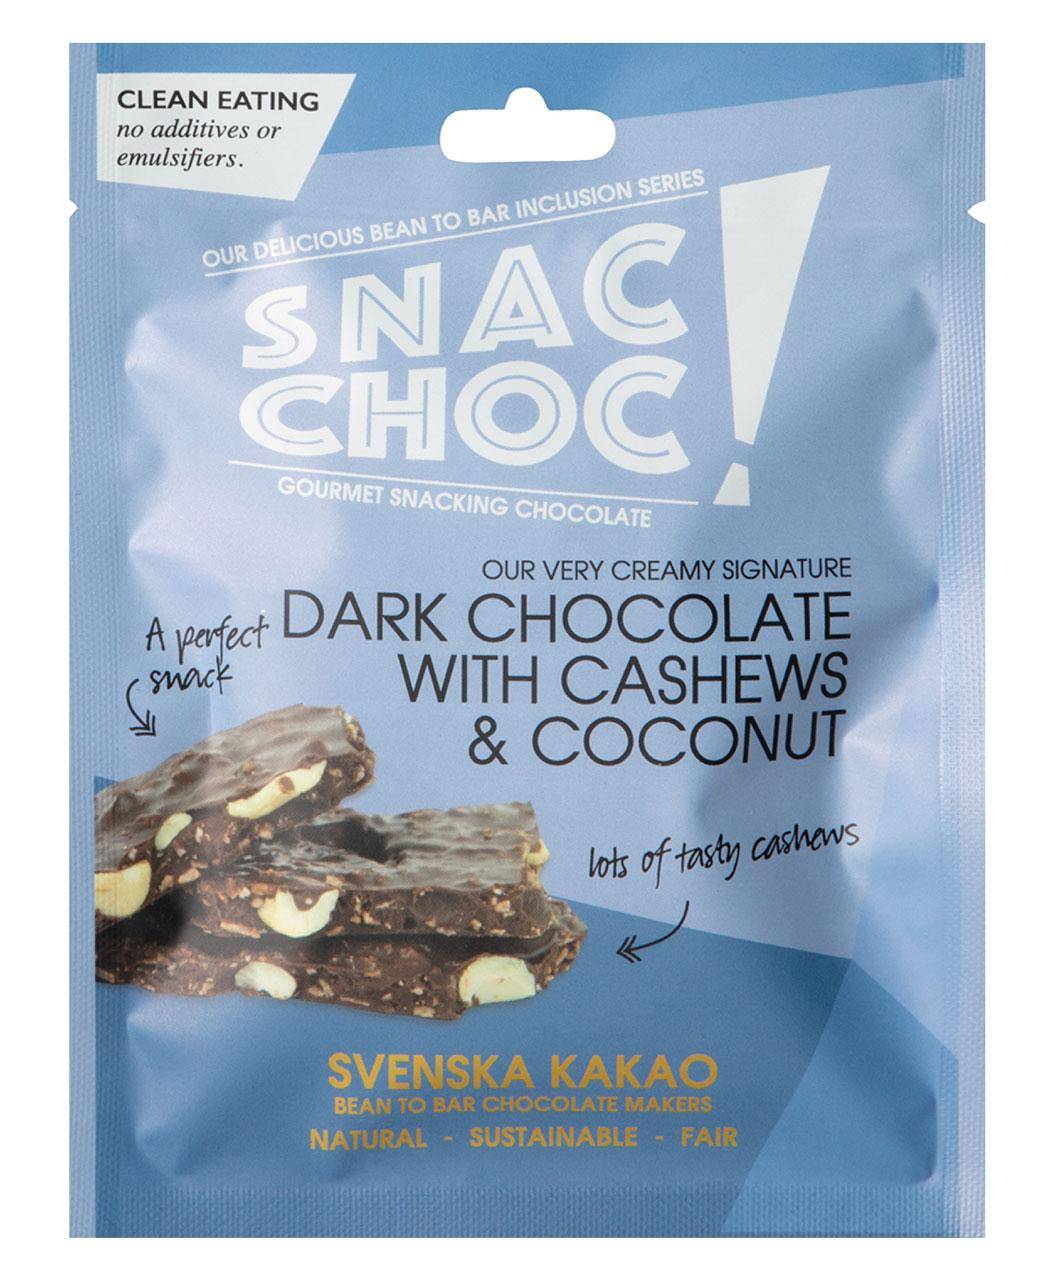 Verpackung der Snac Choc Dunkel mit Cashew und Kokosnuss - blaue Verpackung mit weißer und schwarzer Schrift und Bild der Bruchschokolade